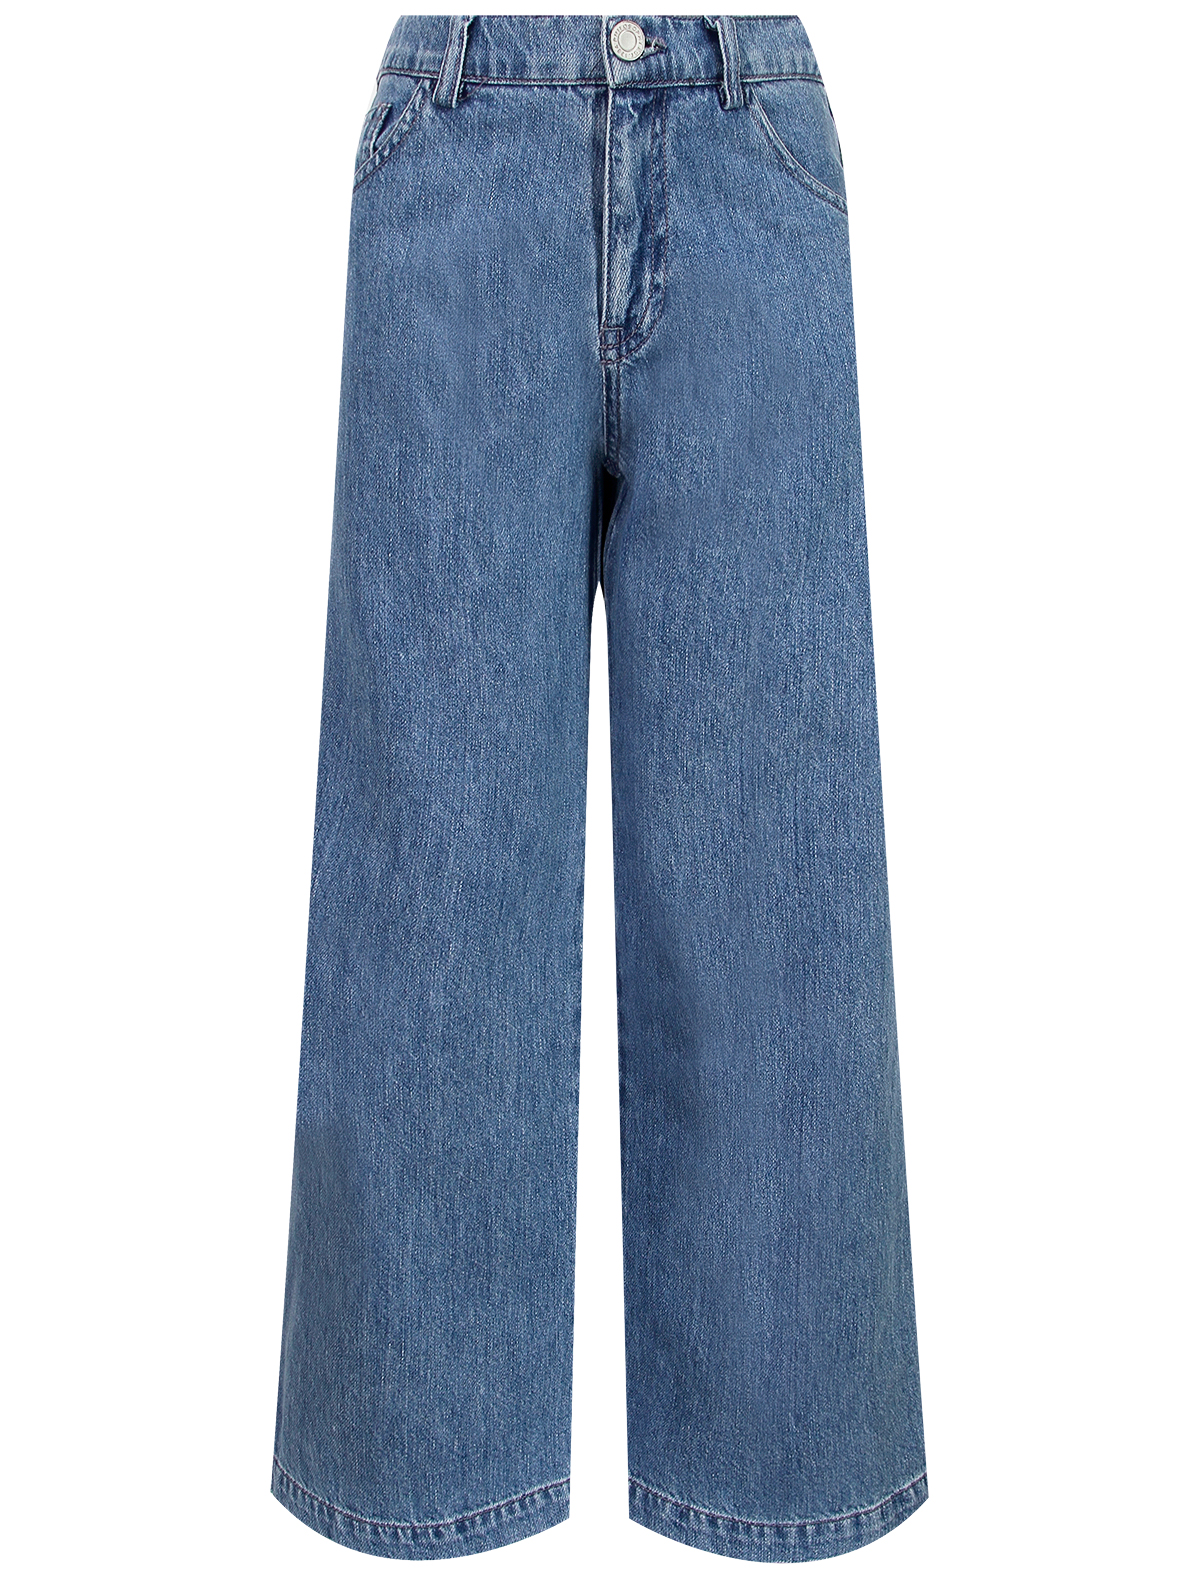 джинсы philosophy для девочки, голубые